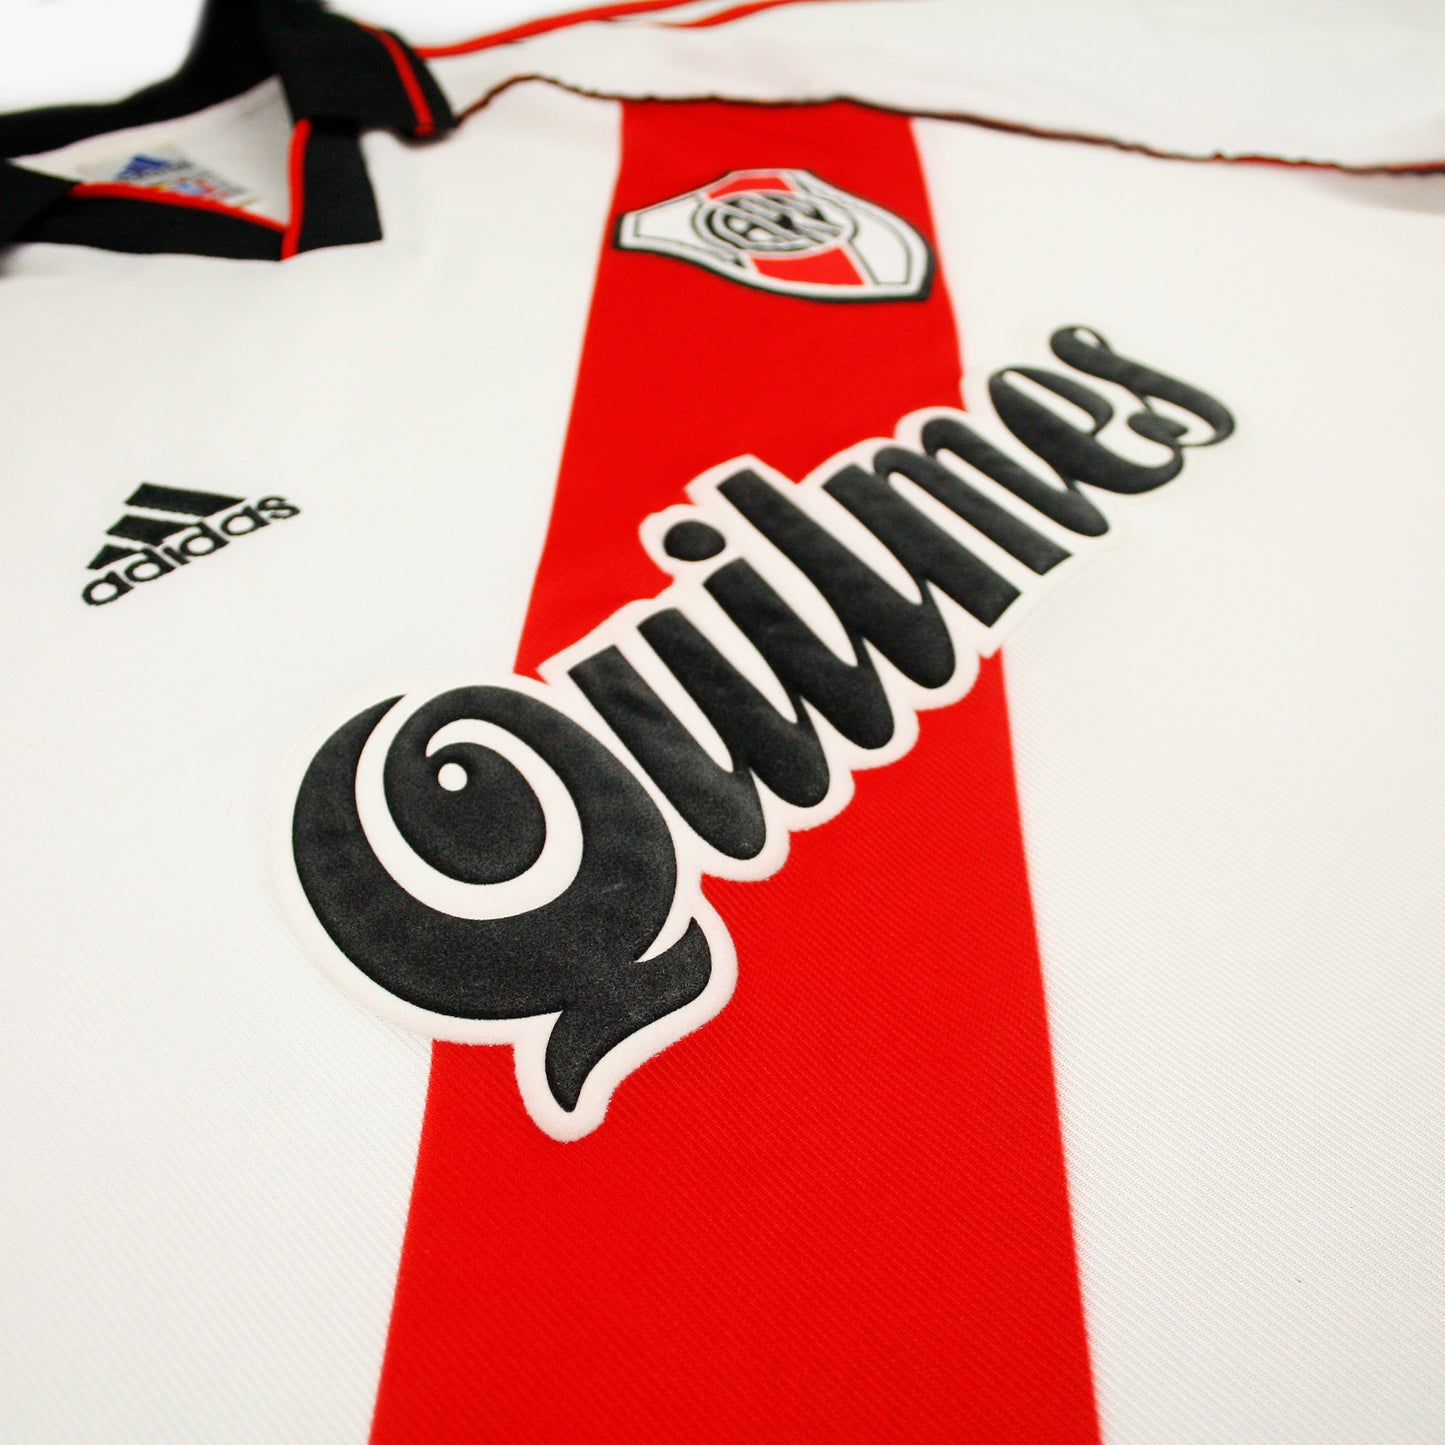 River Plate 01/02 • Camiseta Local • L